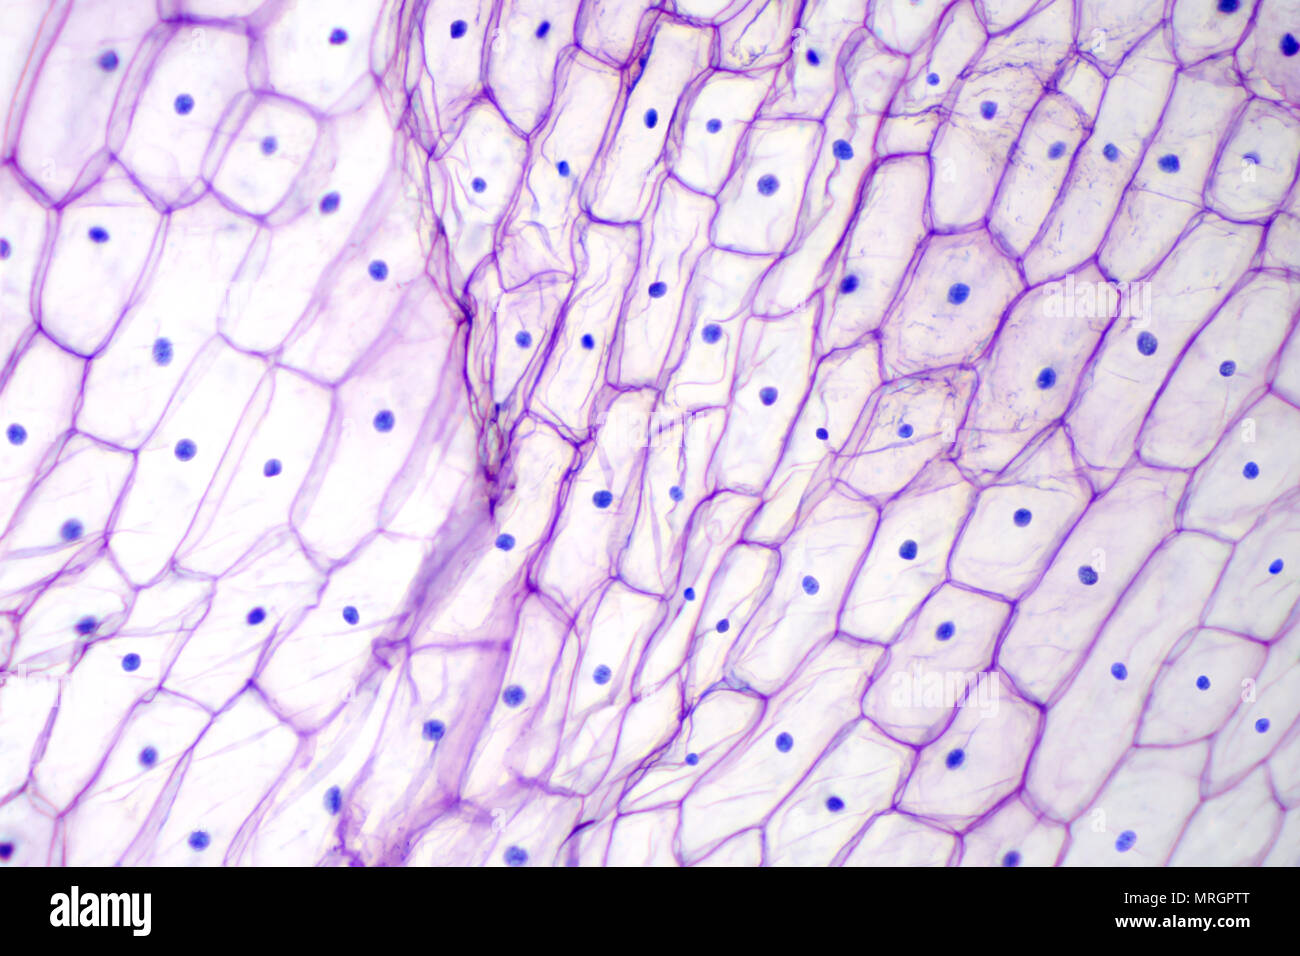 Epidermis de cebolla bajo la luz del microscopio. Color morado, grandes células epidérmicas de una cebolla, Allium cepa, en una sola capa. Foto. Foto de stock